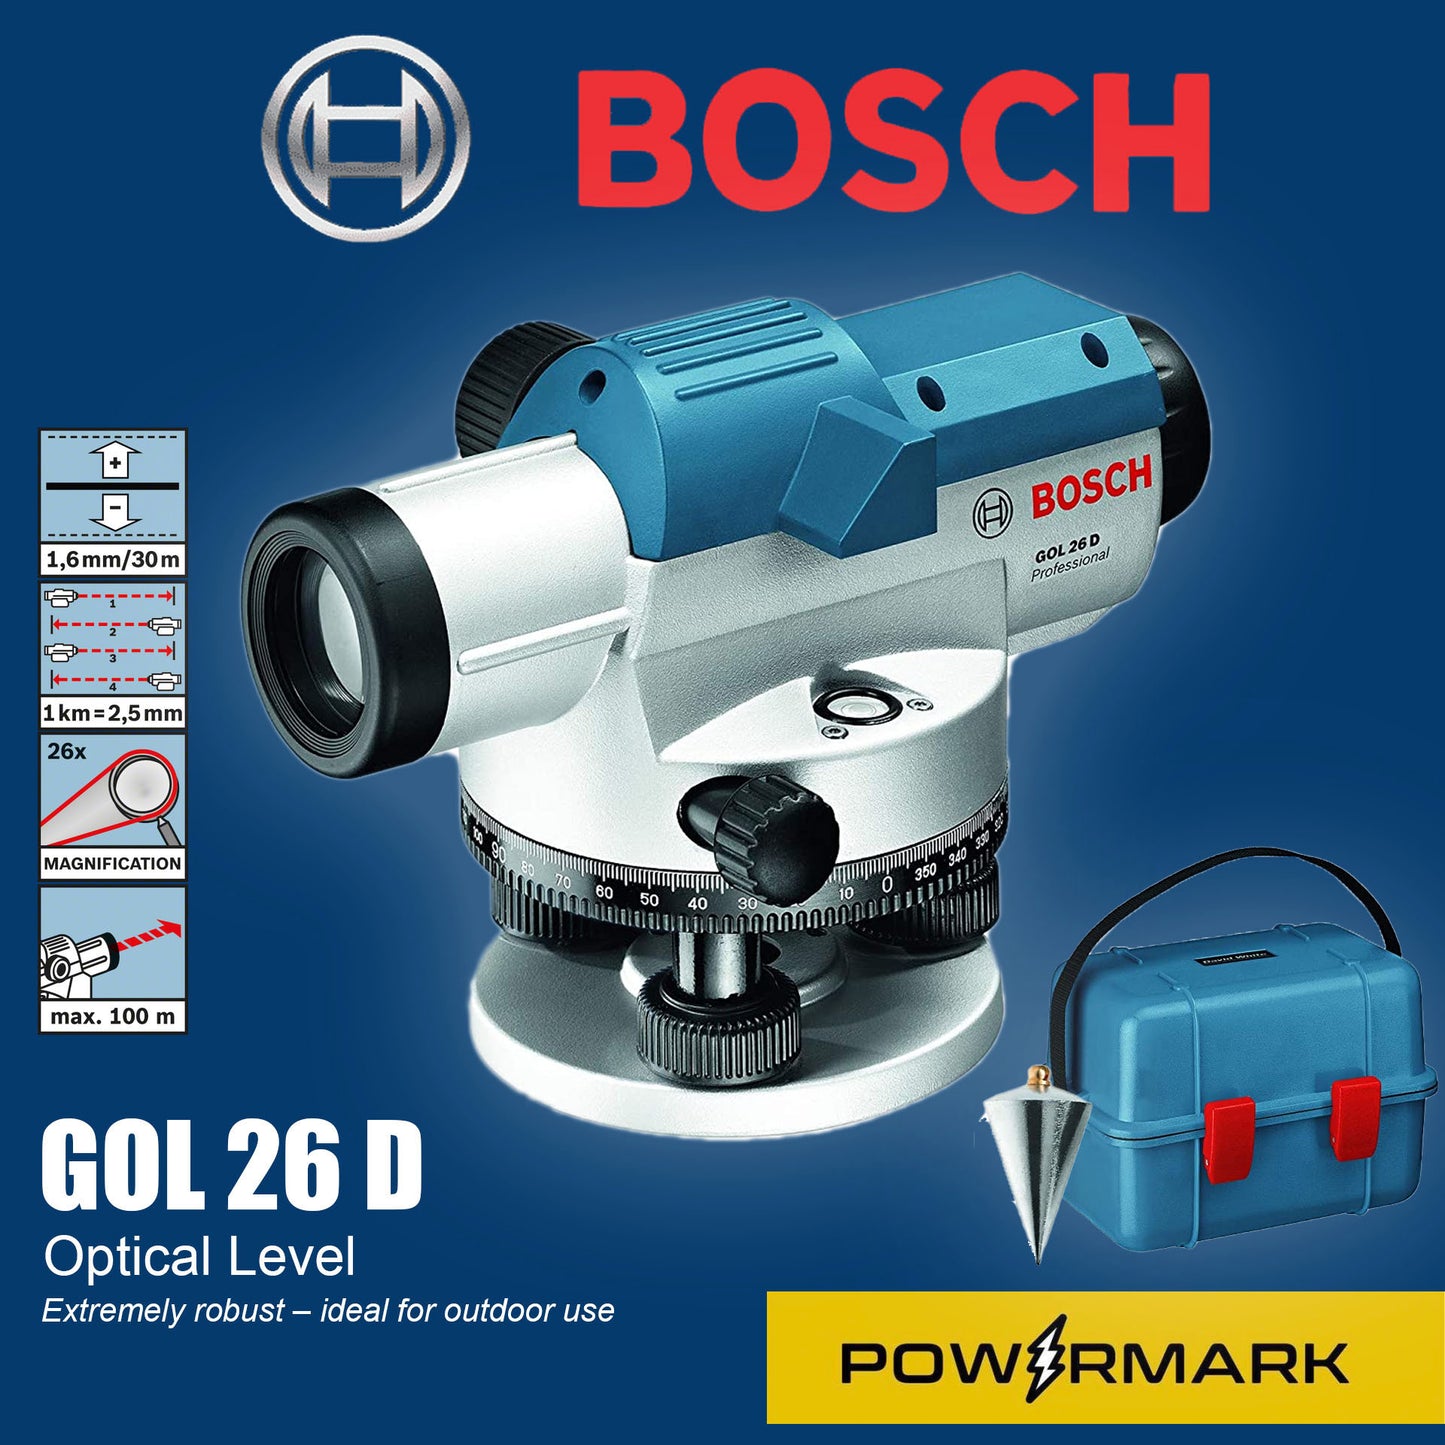 BOSCH GOL 26 D Optical Level